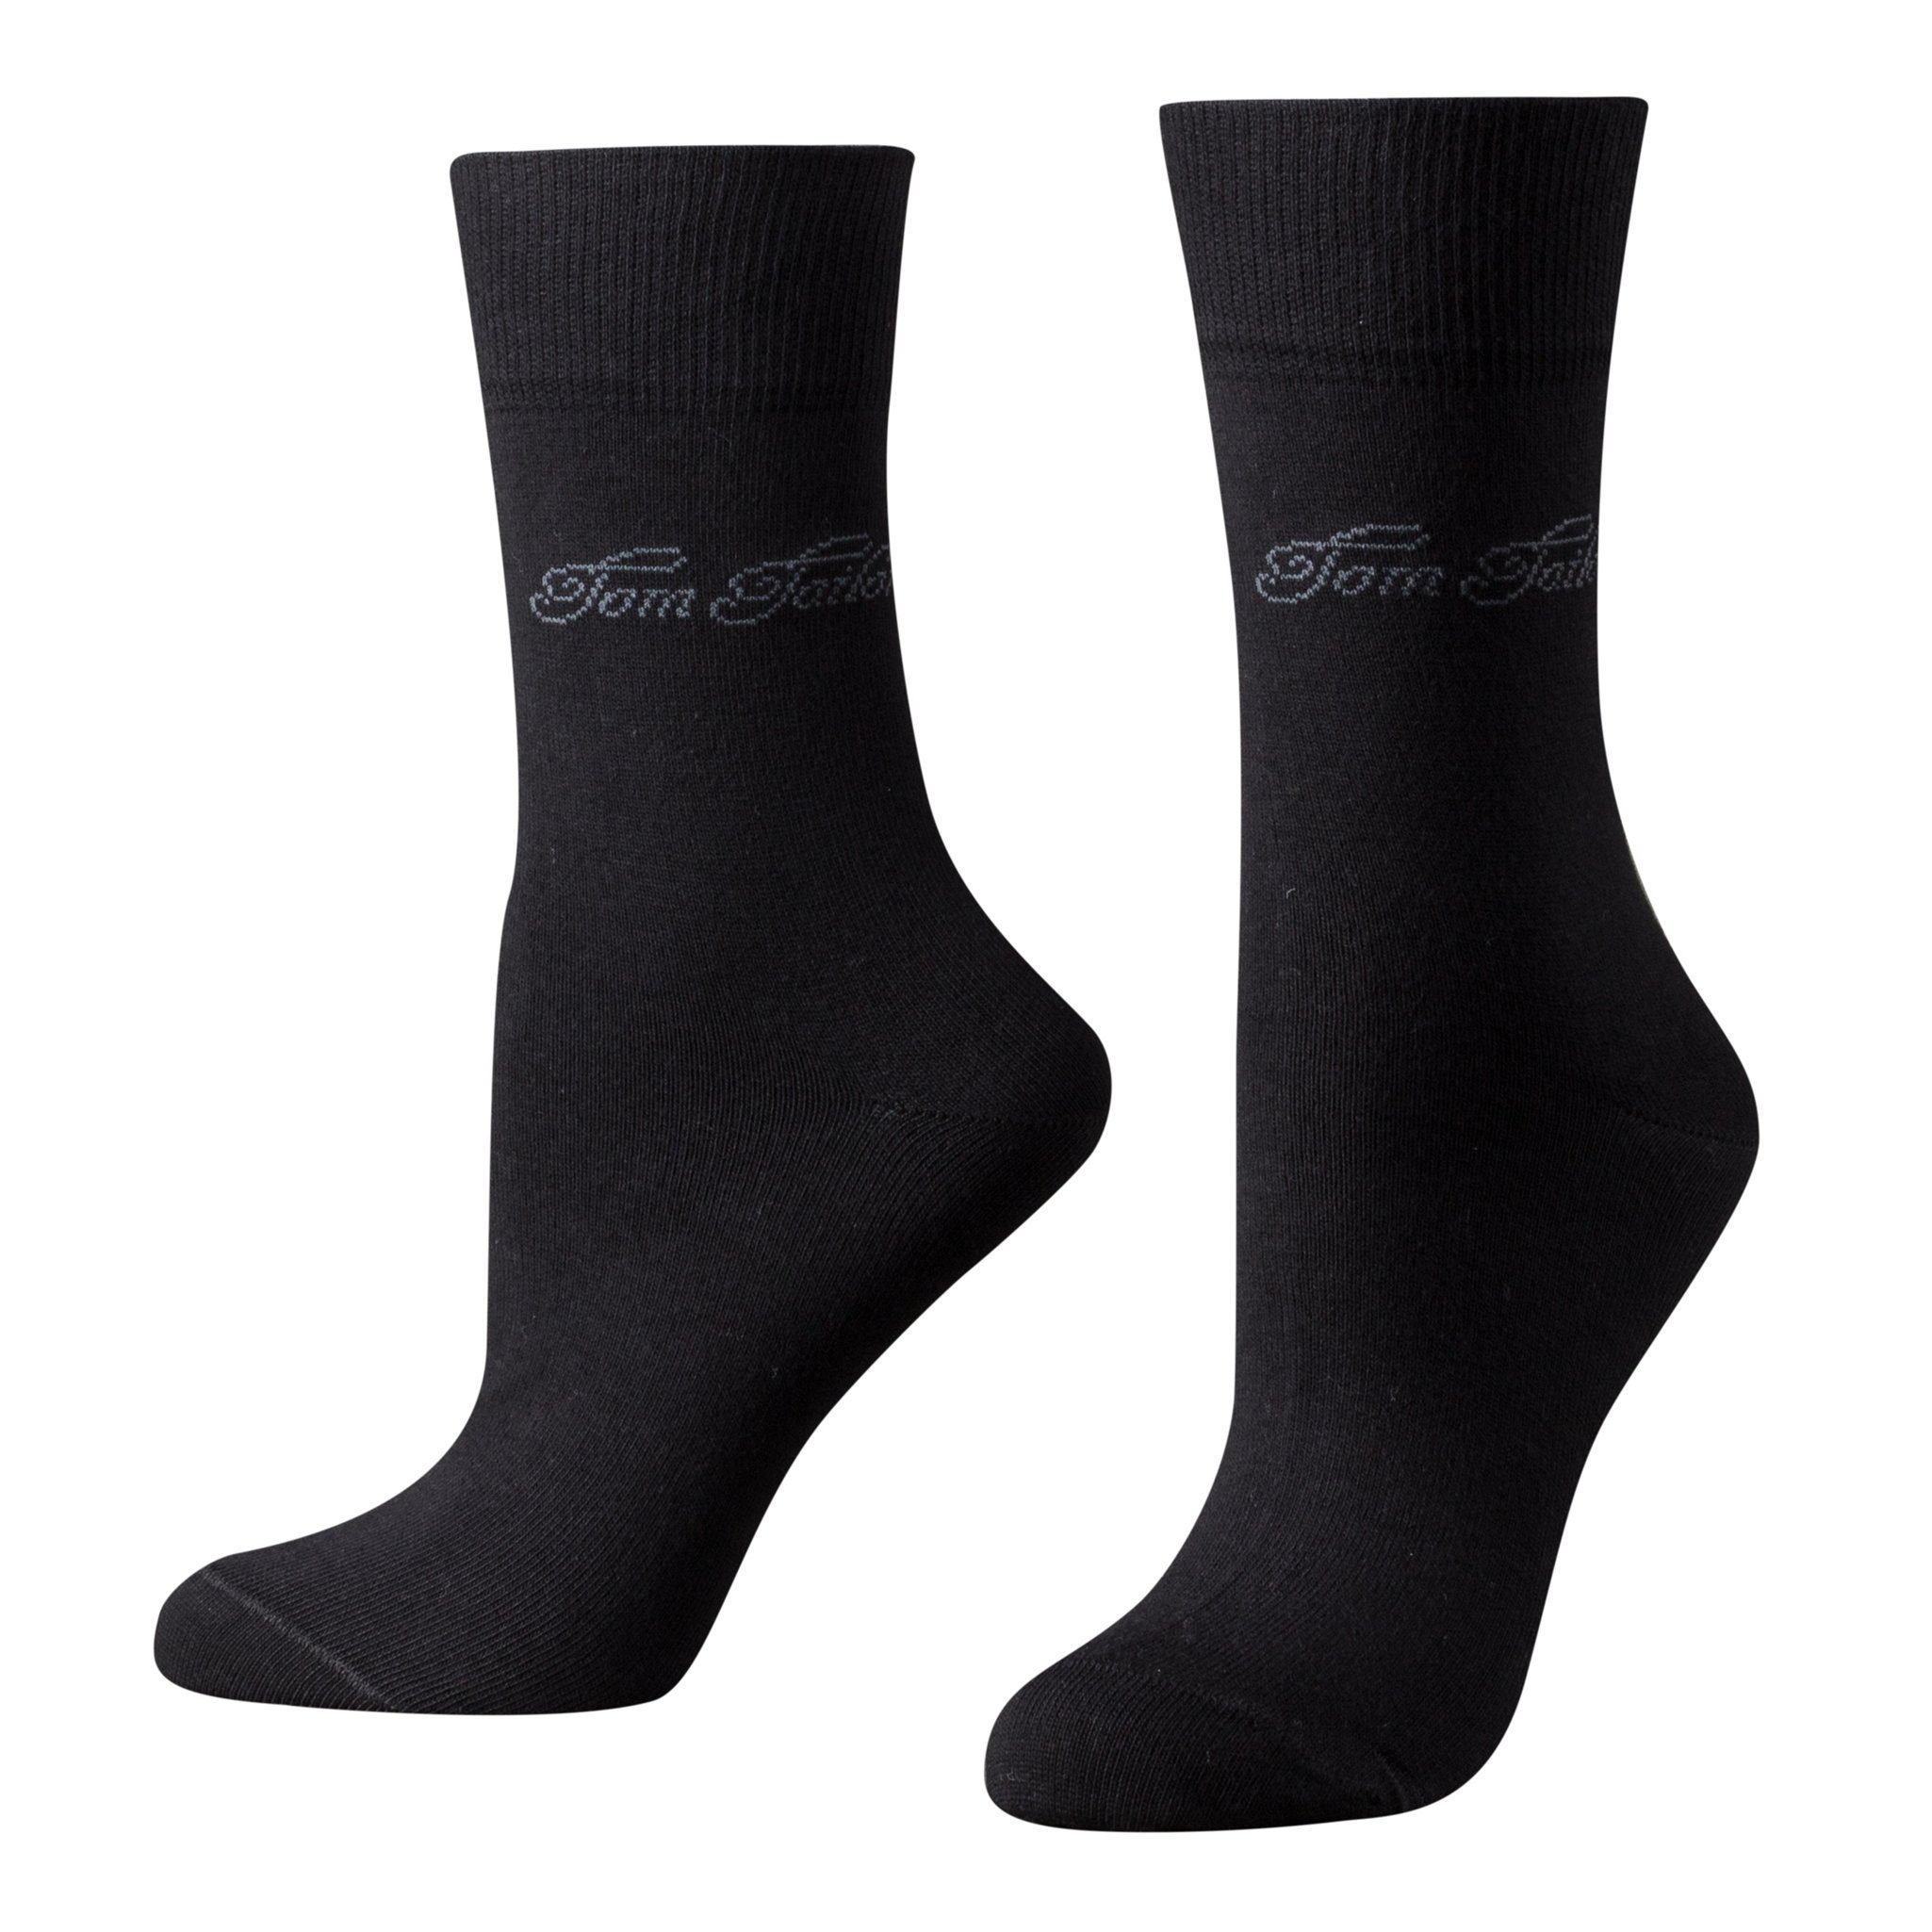 TOM TAILOR Socken 9702610038 Tom Tailor 2er Pack Basic Women Socks 9702 610 black schwarz Doppelpack Strümpfe Socken